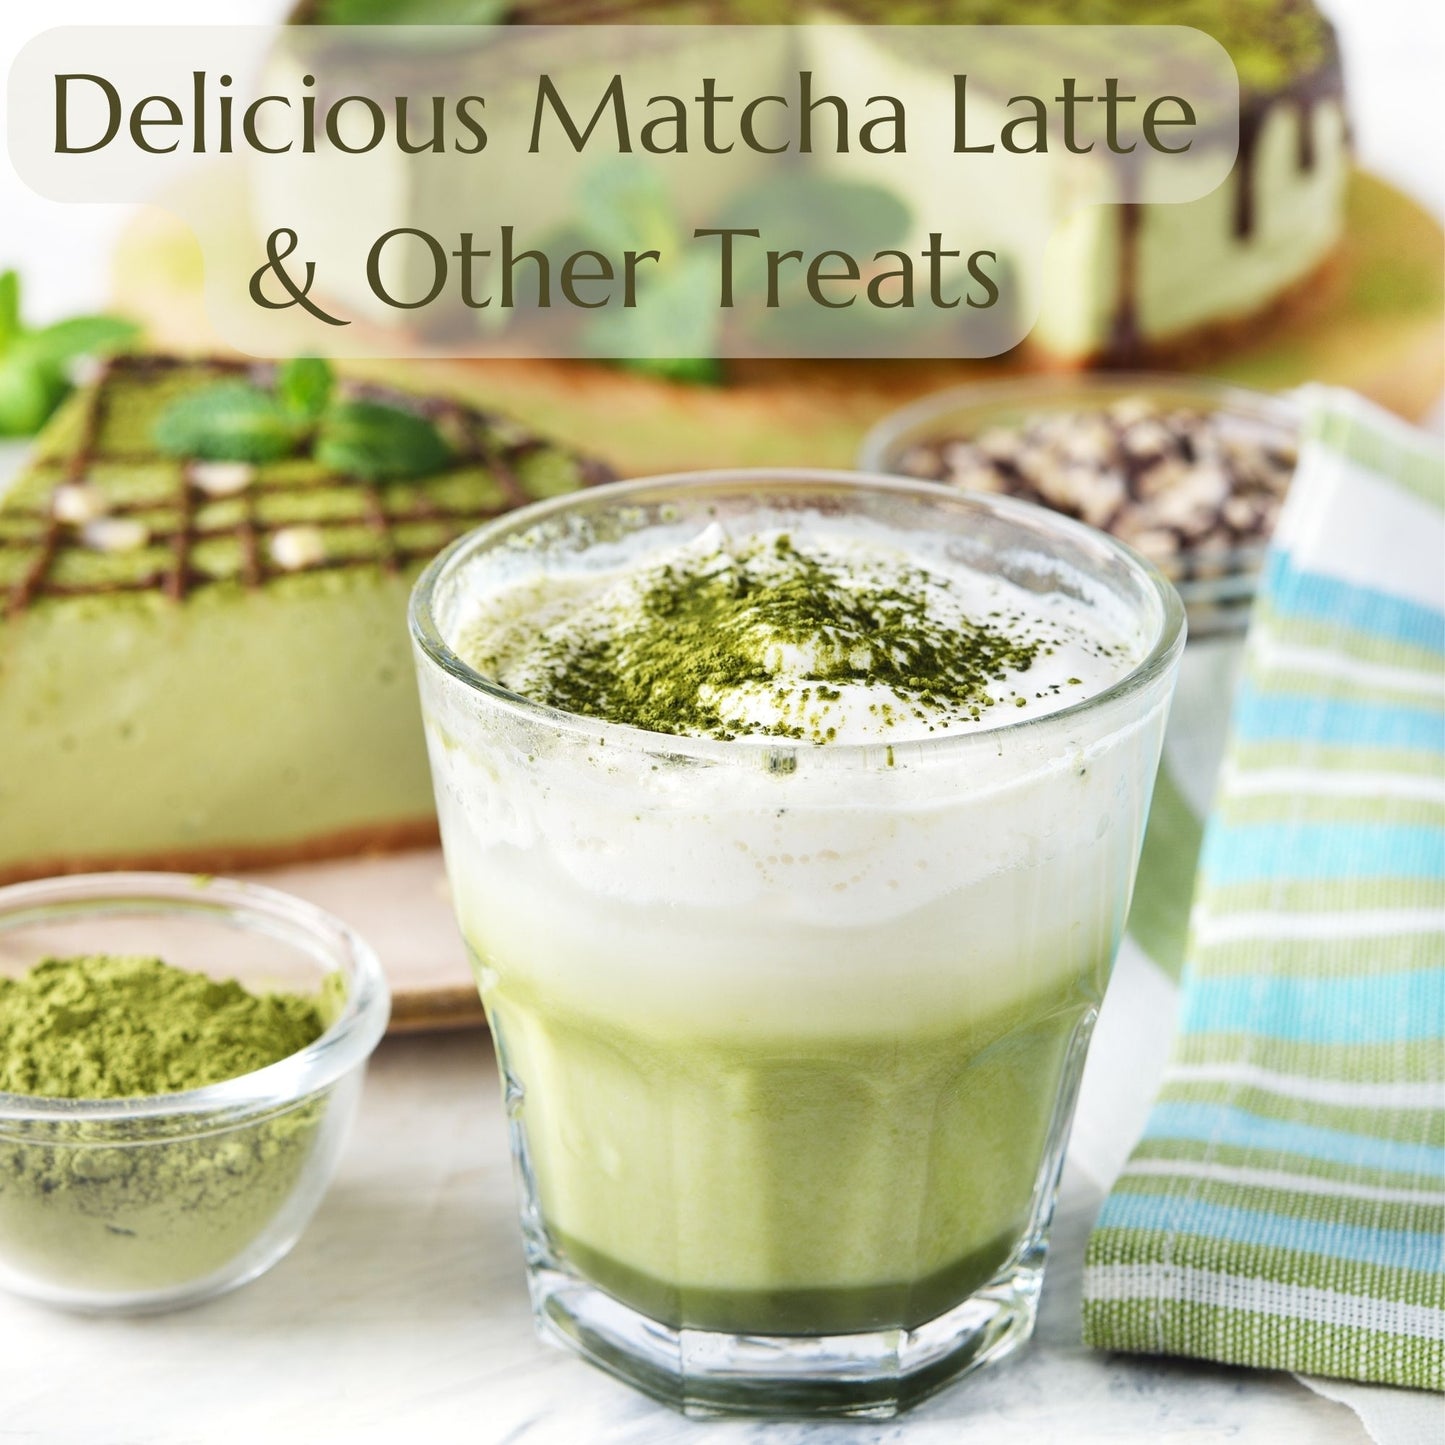 Anna's Teapot Organic Matcha Green Tea Powder from Japan - Pure Matcha Tea Powder for Matcha Tea and Matcha Latte in a Resealable Pouch